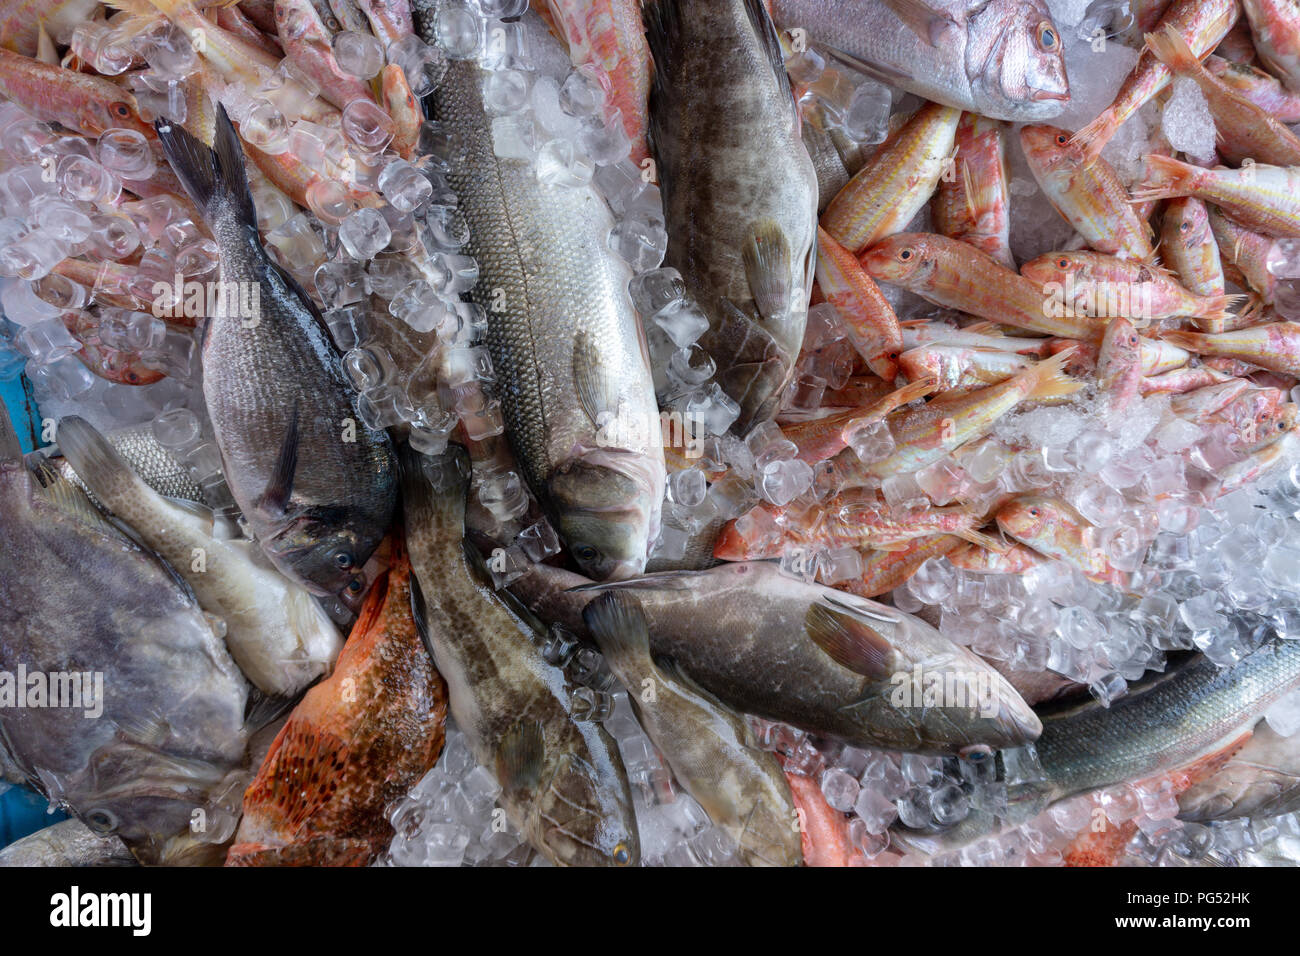 Pesce fresco sul mercato stallo che si trova nel villaggio mediterraneo della Turchia. Foto Stock